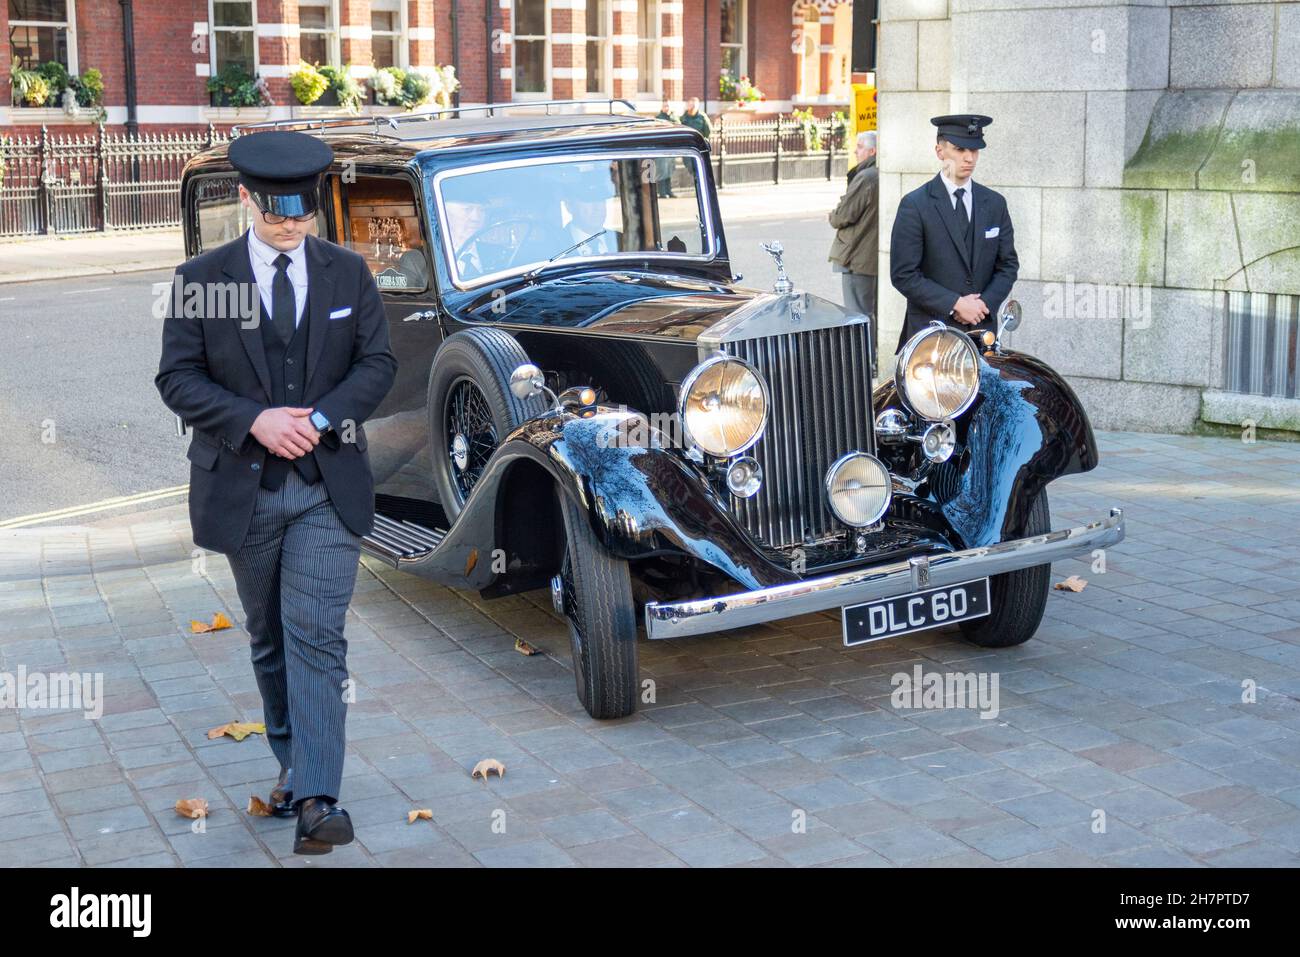 Die Schatulle des ermordeten Abgeordneten David Amess bei der Ankunft in der Westminster Cathedral, London, Großbritannien, in einem alten Rolls Royce 25/30 Leichenwagen Stockfoto